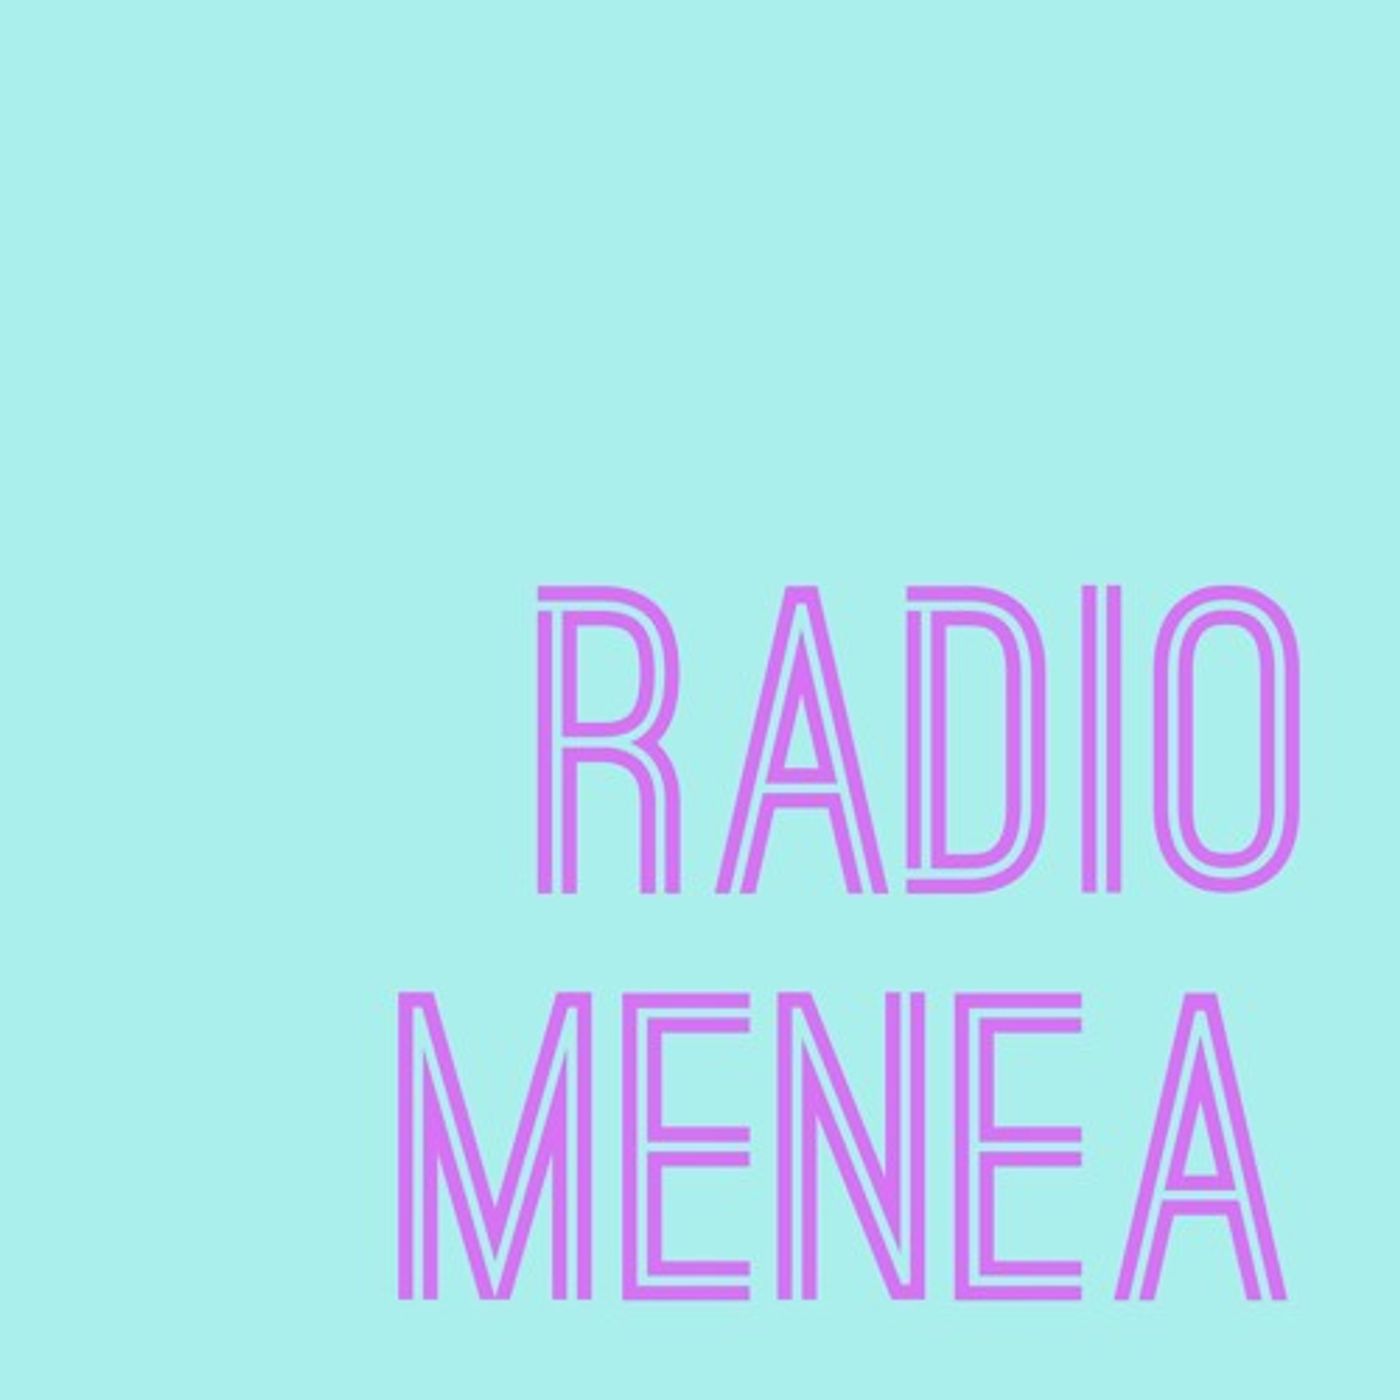 Thumbnail for "Episode 105: Favy on Radio Menea!".